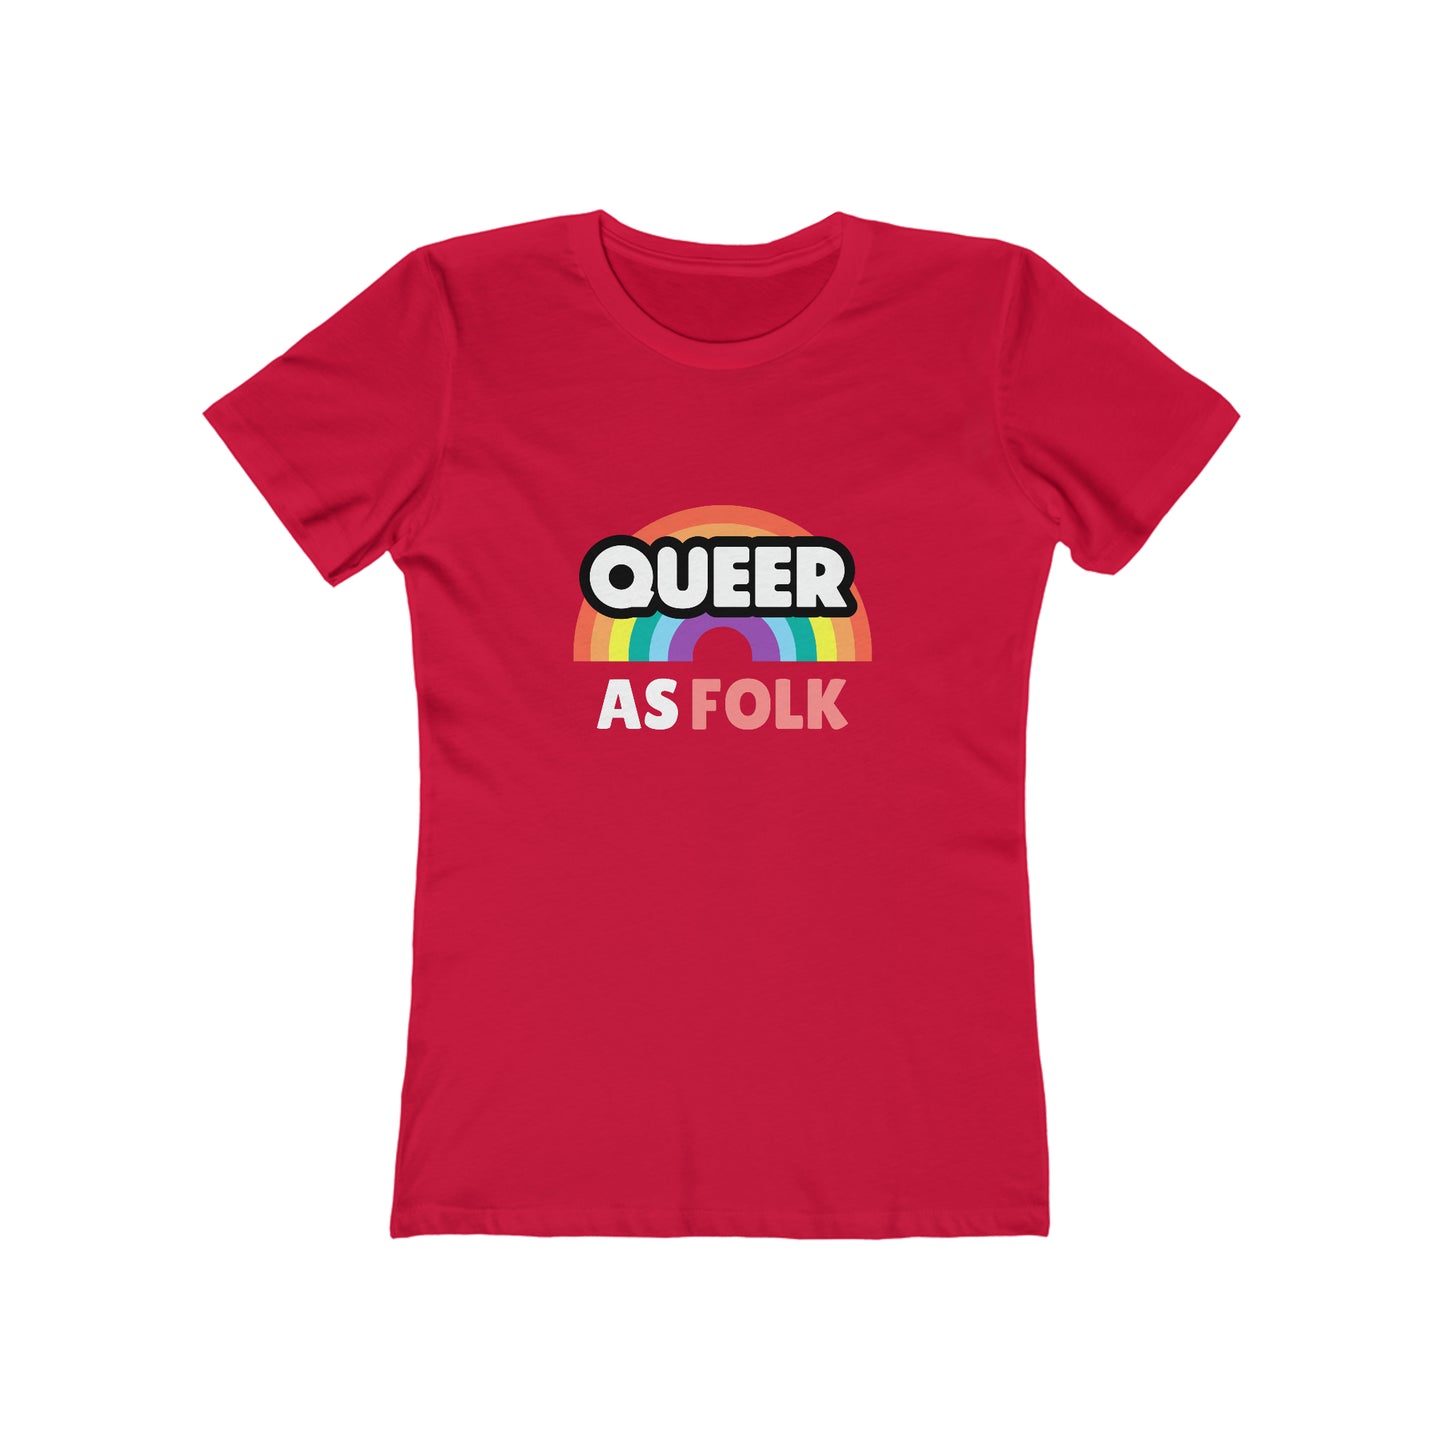 Queer As Folk - Women's T-shirt